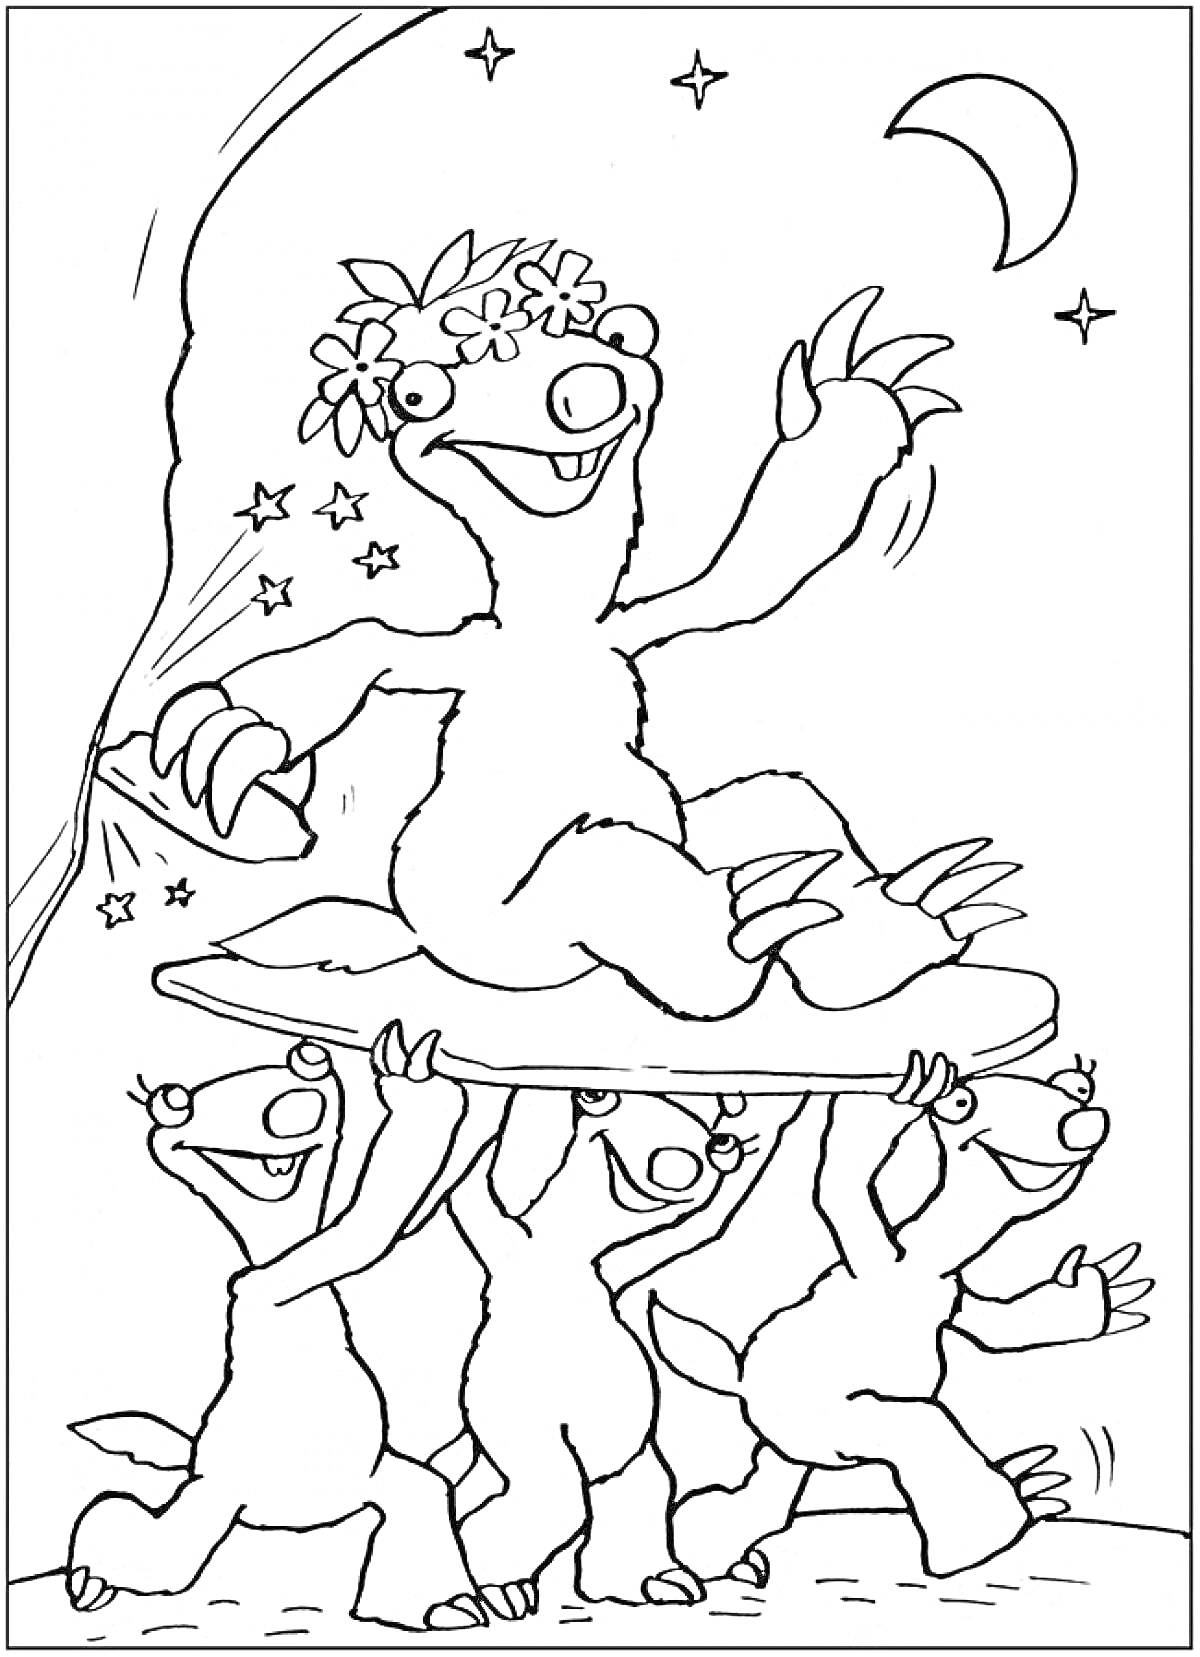 Раскраска Радостный ленивец на доске, поднятой тремя другими ленивцами с луной и звездами на заднем плане